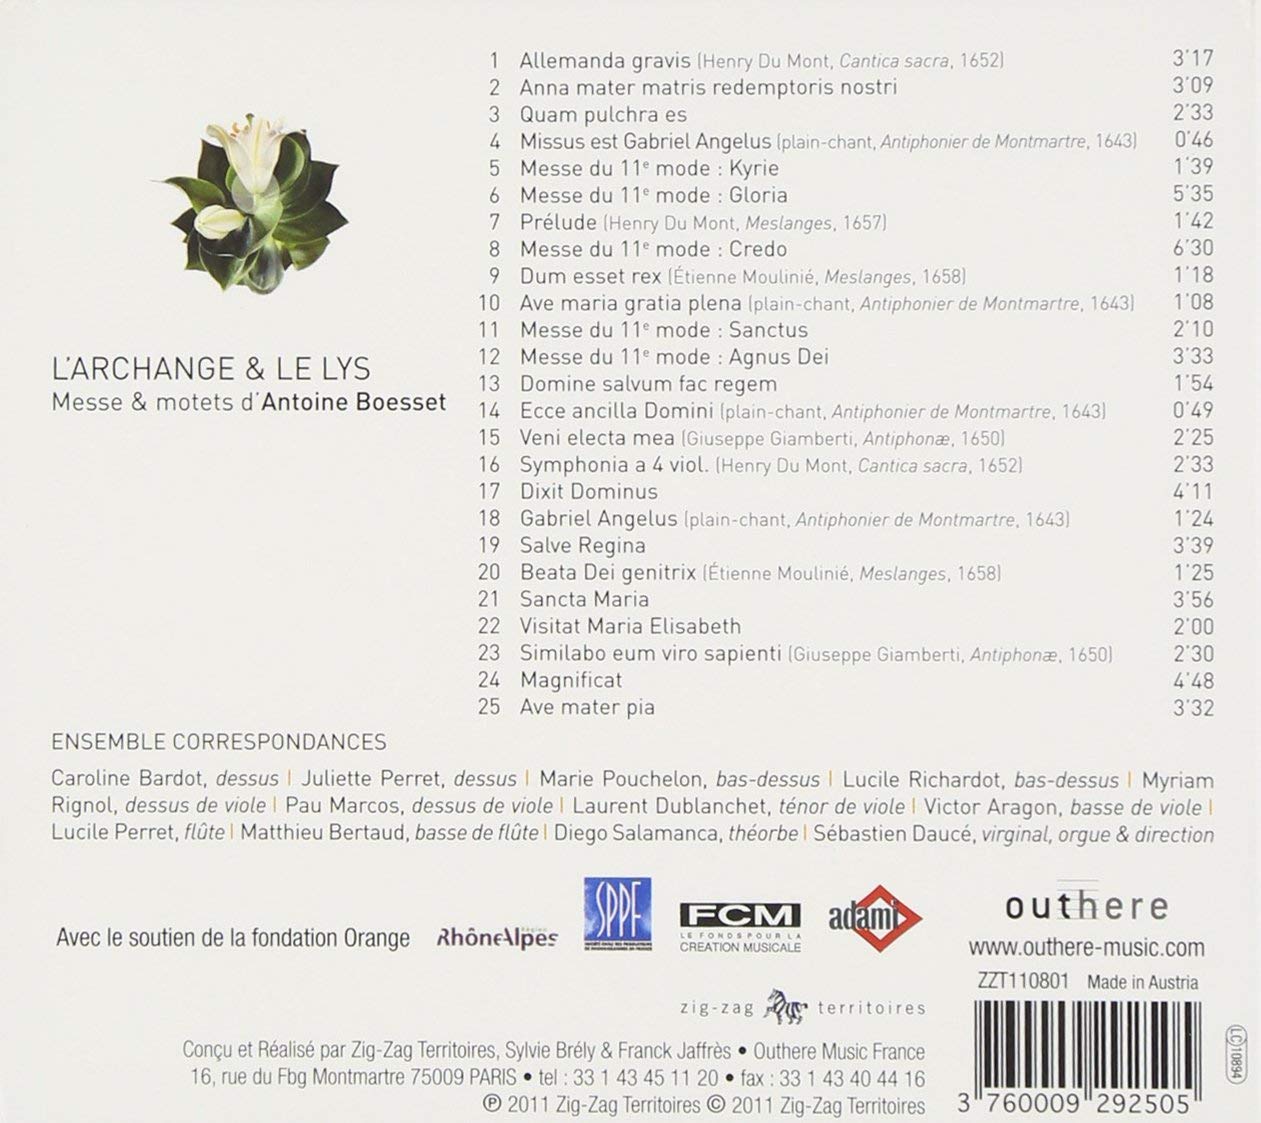 L’Archange & le Lys - Mass & motets de Antoine Boesset - slide-1